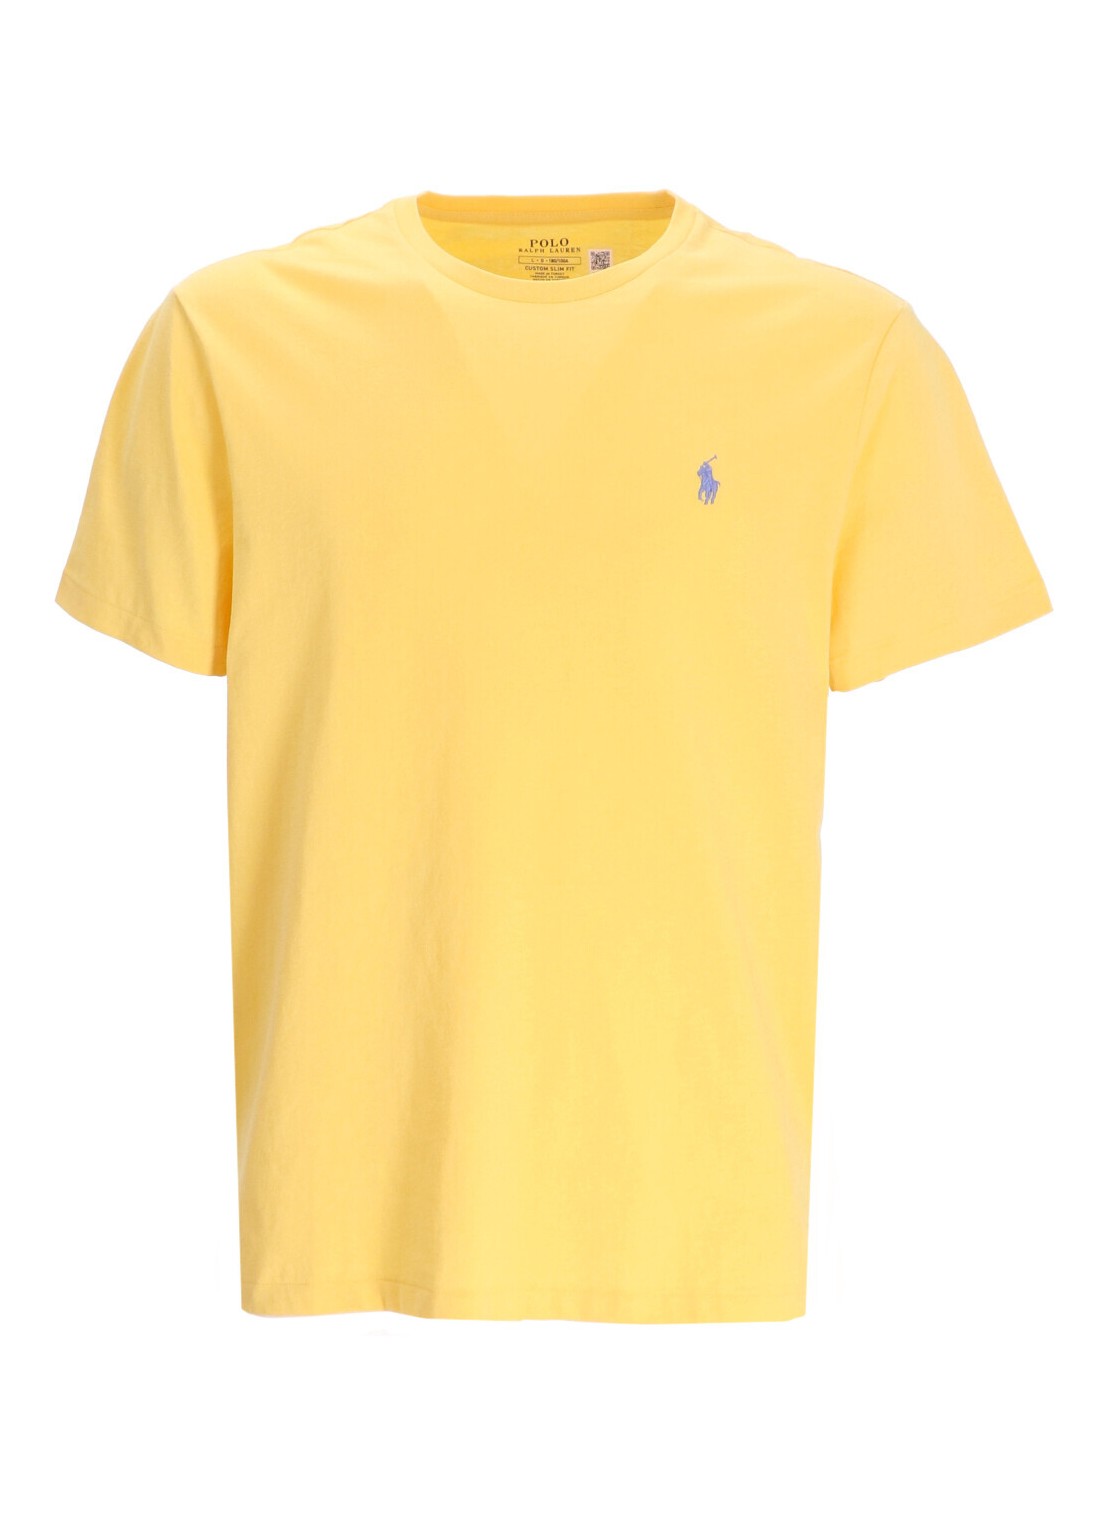 Camiseta polo ralph lauren t-shirt man sscncmslm2-short sleeve-t-shirt 710671438342 fall yellow c735